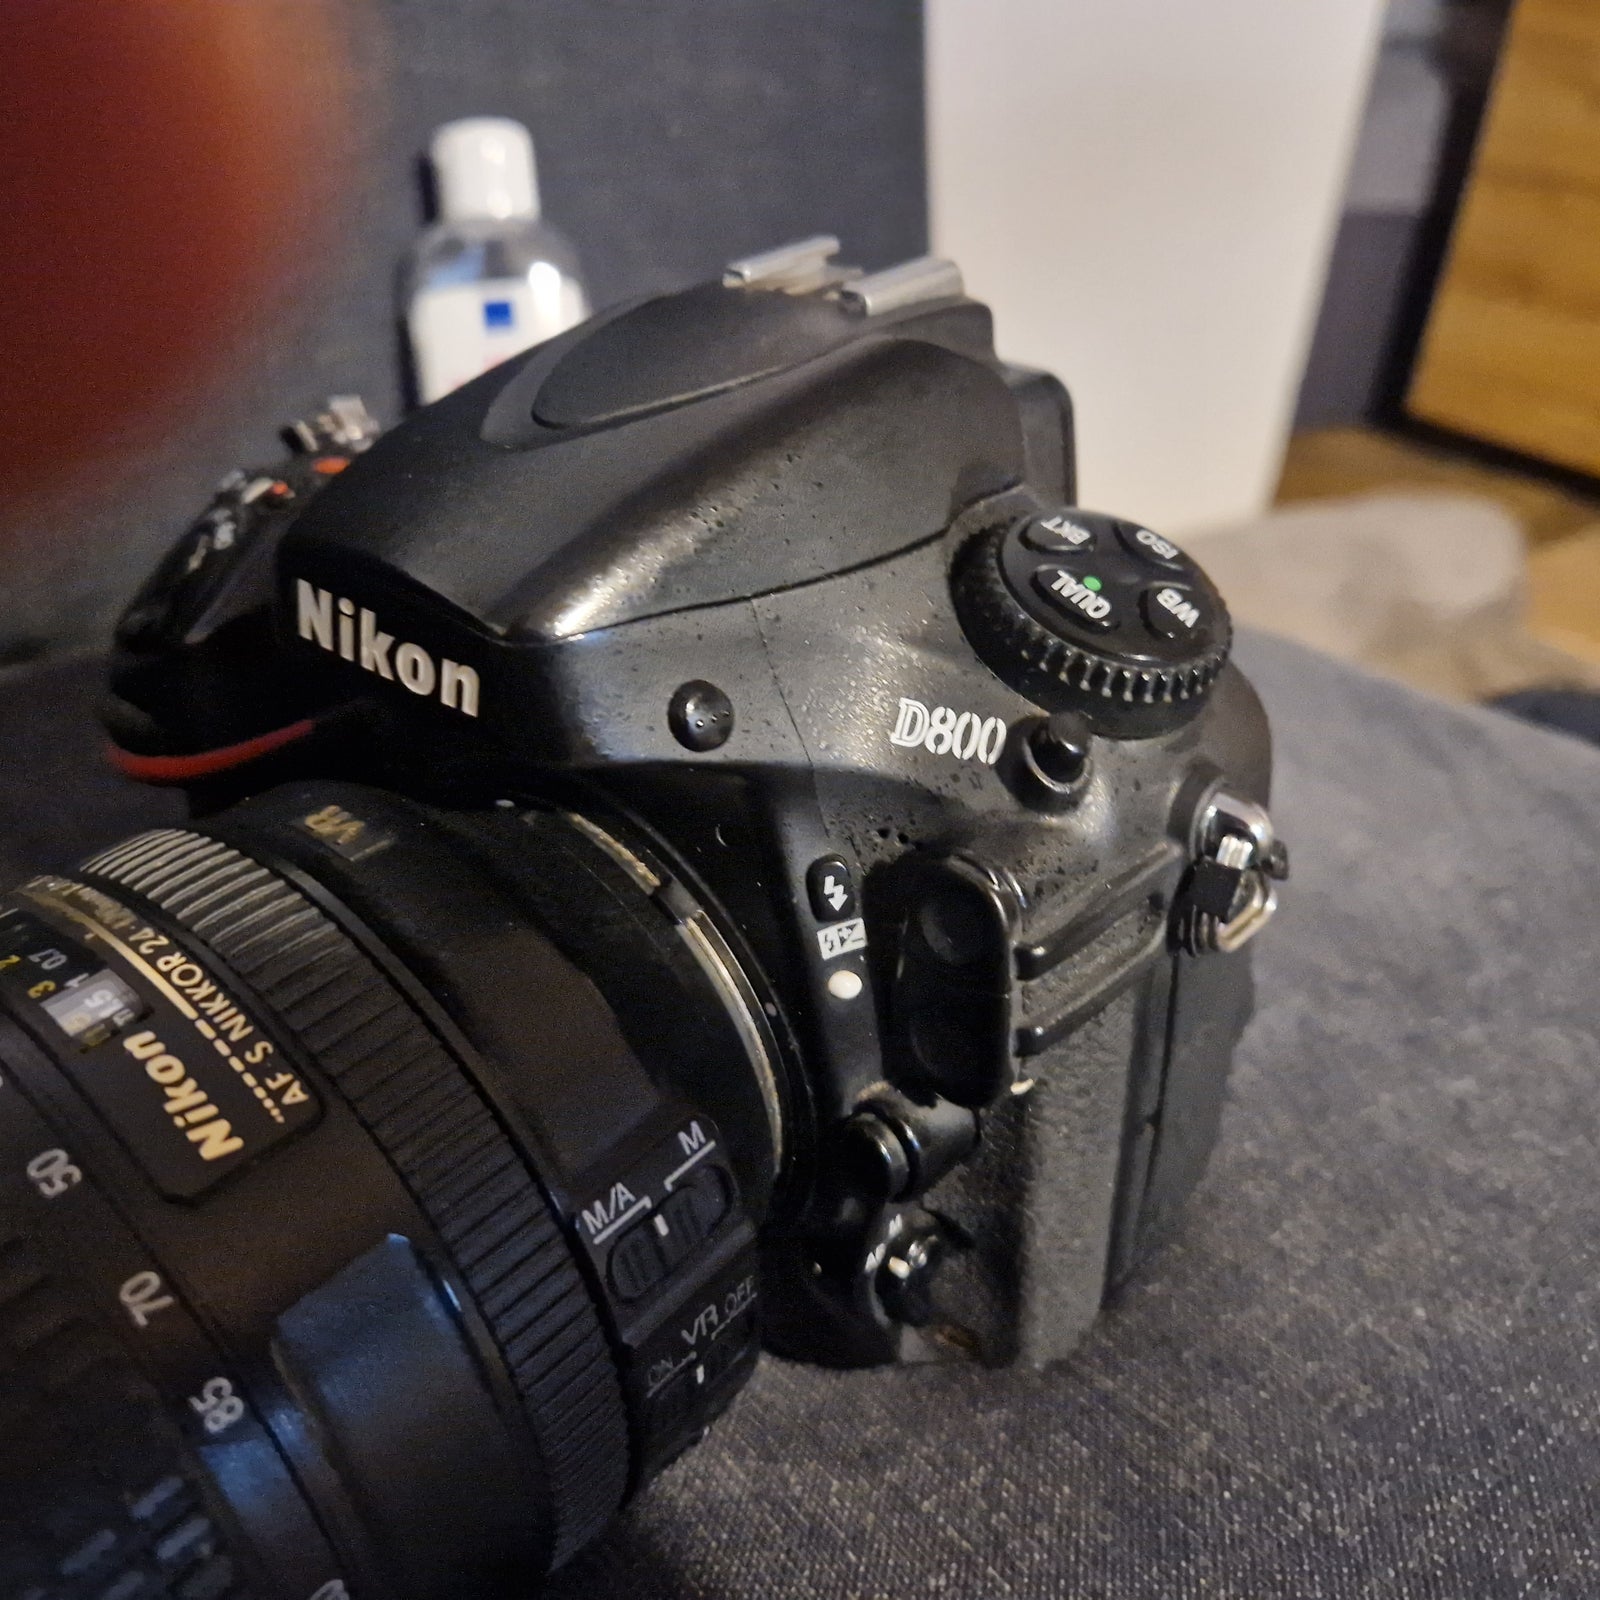 Nikon D800 SOLGT, spejlrefleks, 36 megapixels